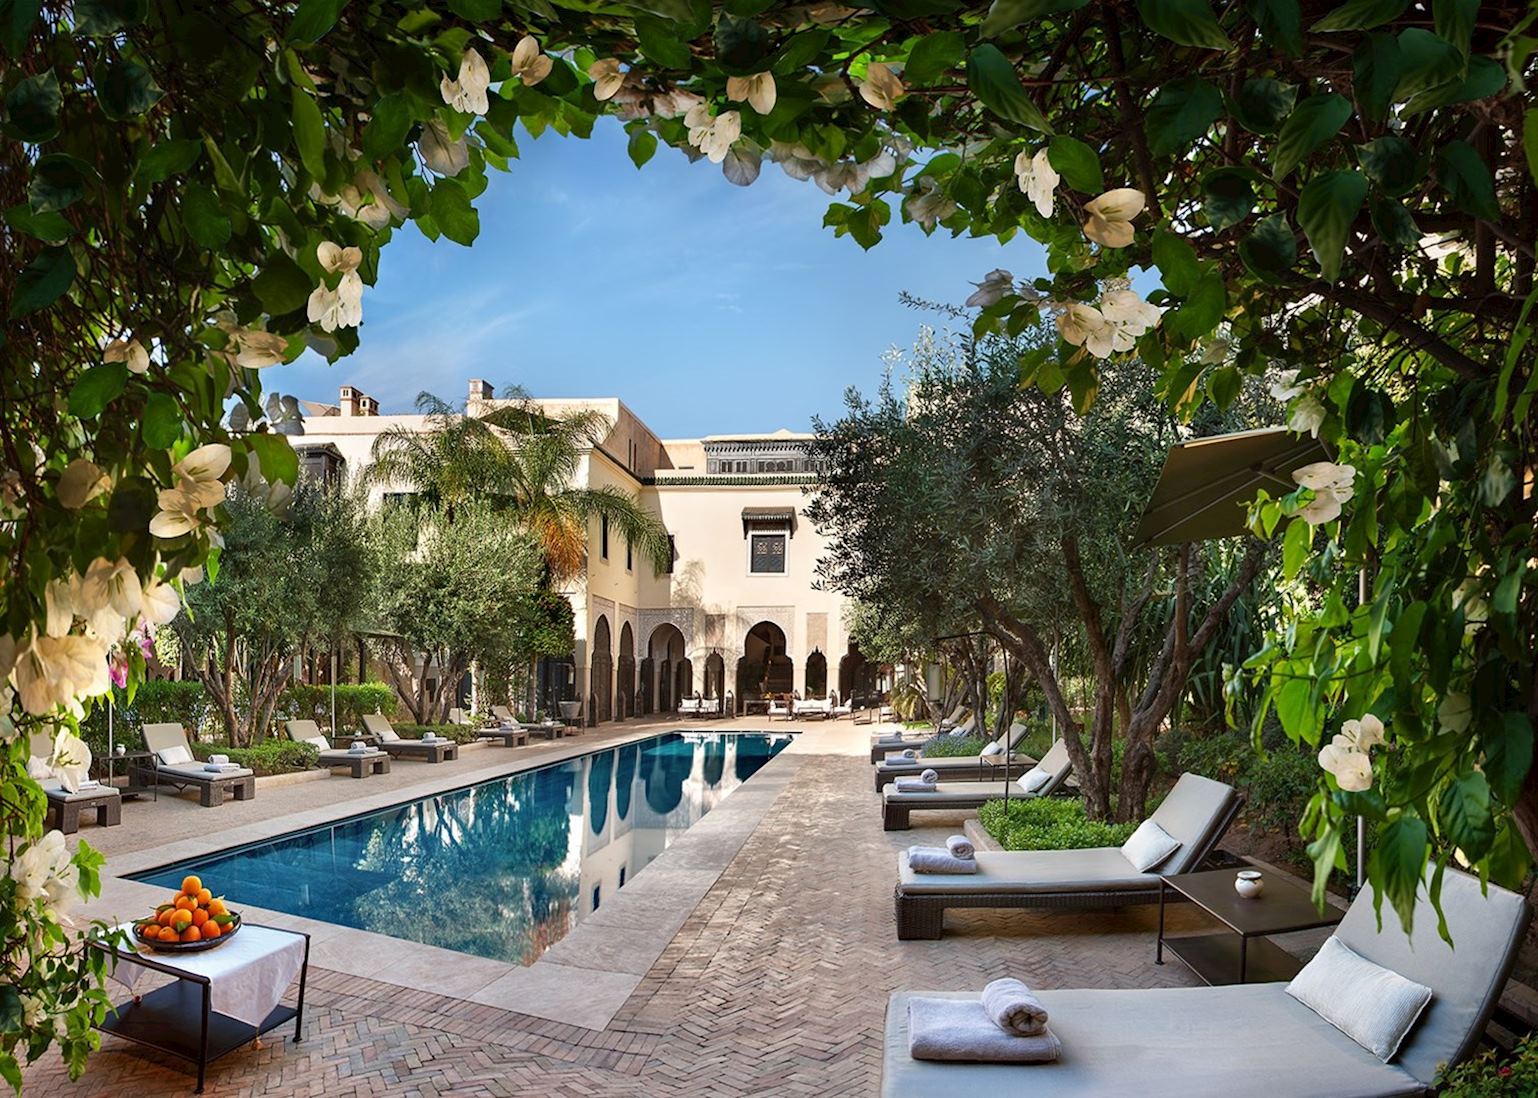 Villa des Orangers | Hotels in Marrakesh | Audley Travel US